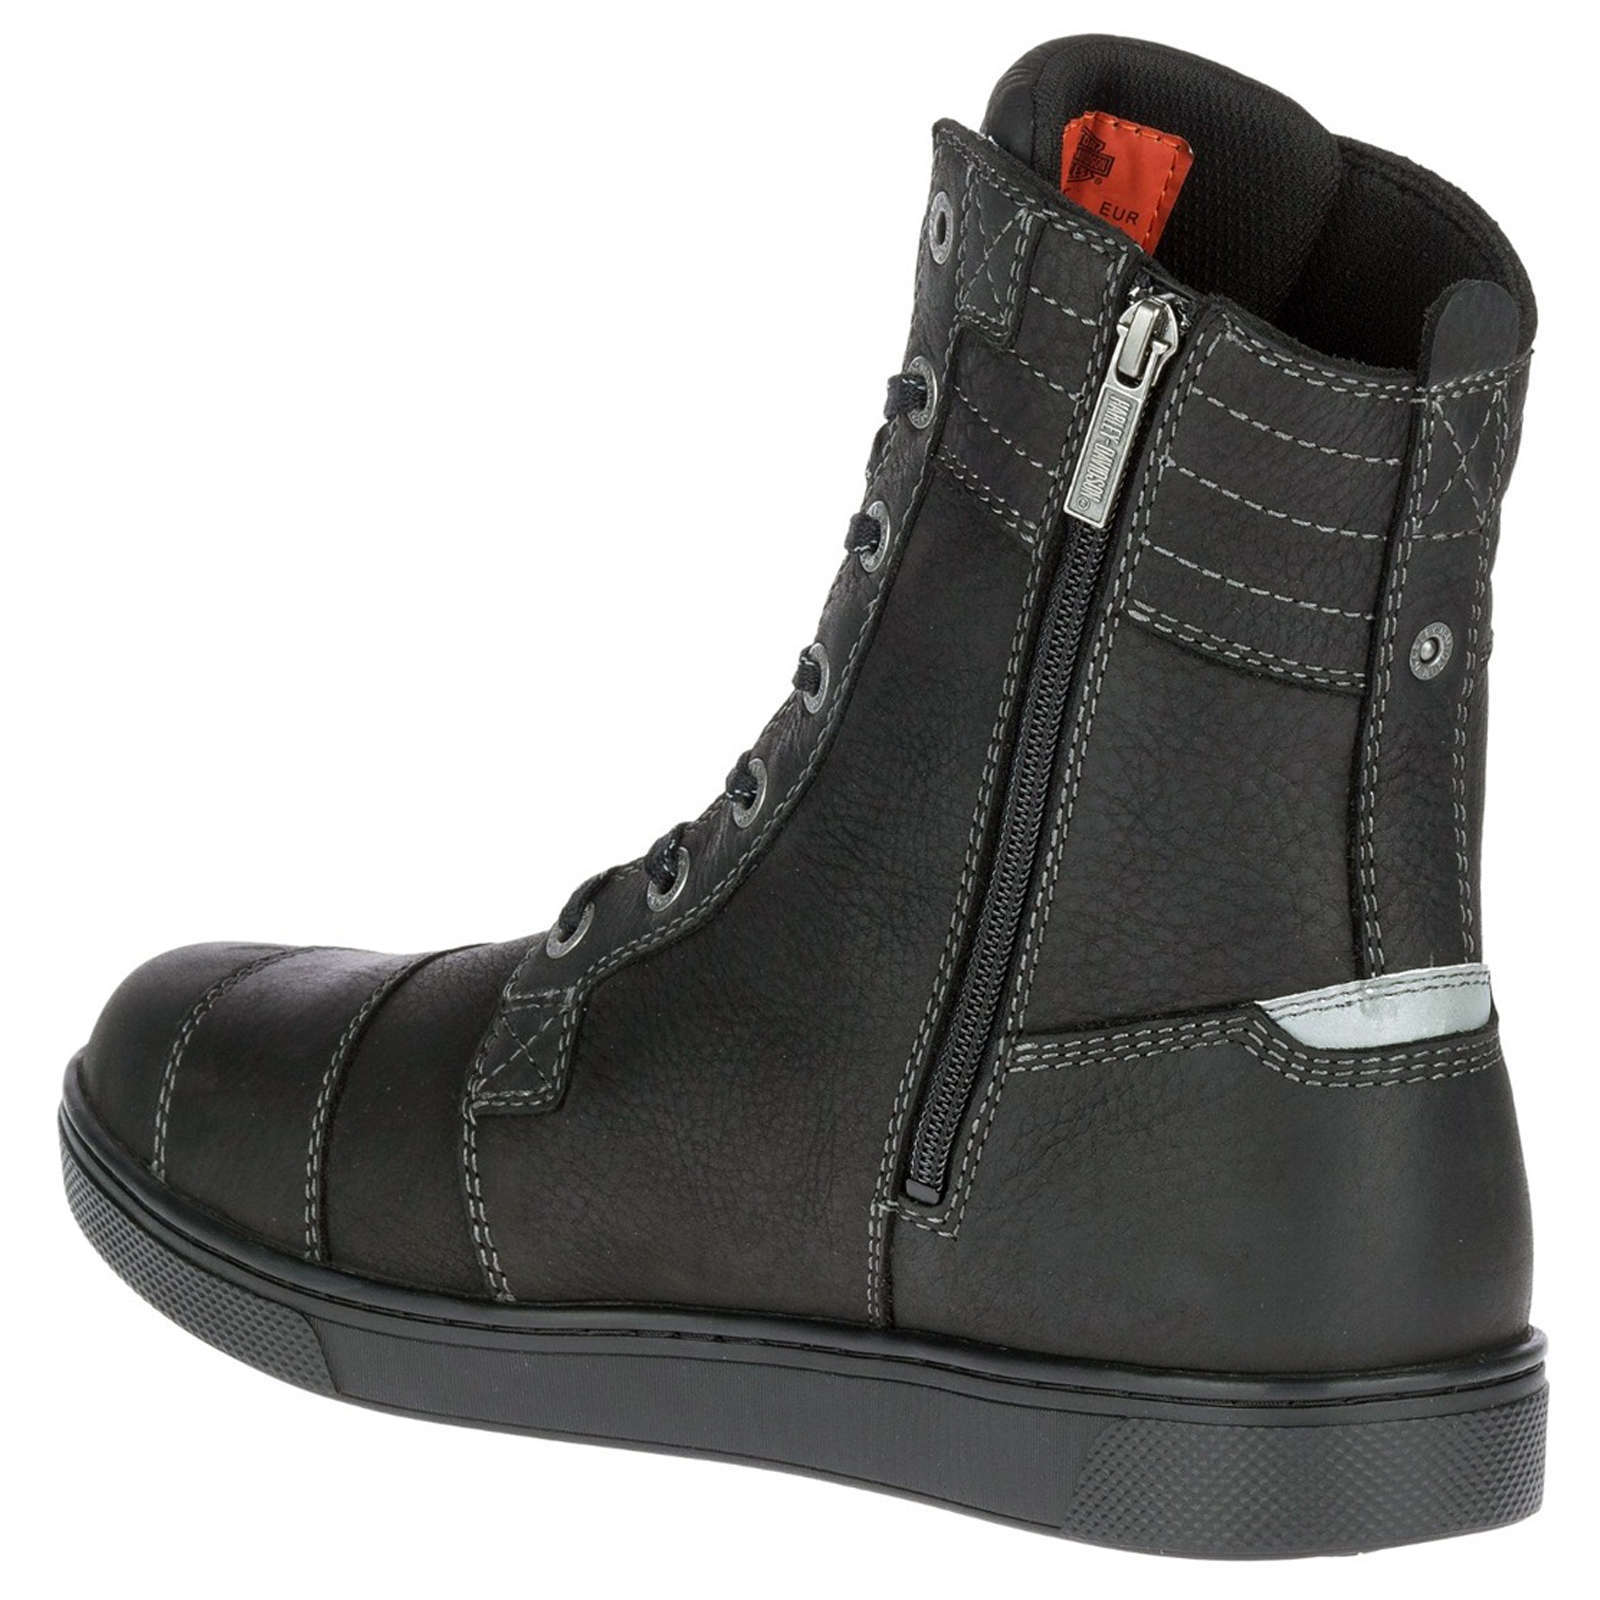 Harley Davidson Steinman Hi Waterproof Full Grain Leather Men's High-Top Sneakers#color_black